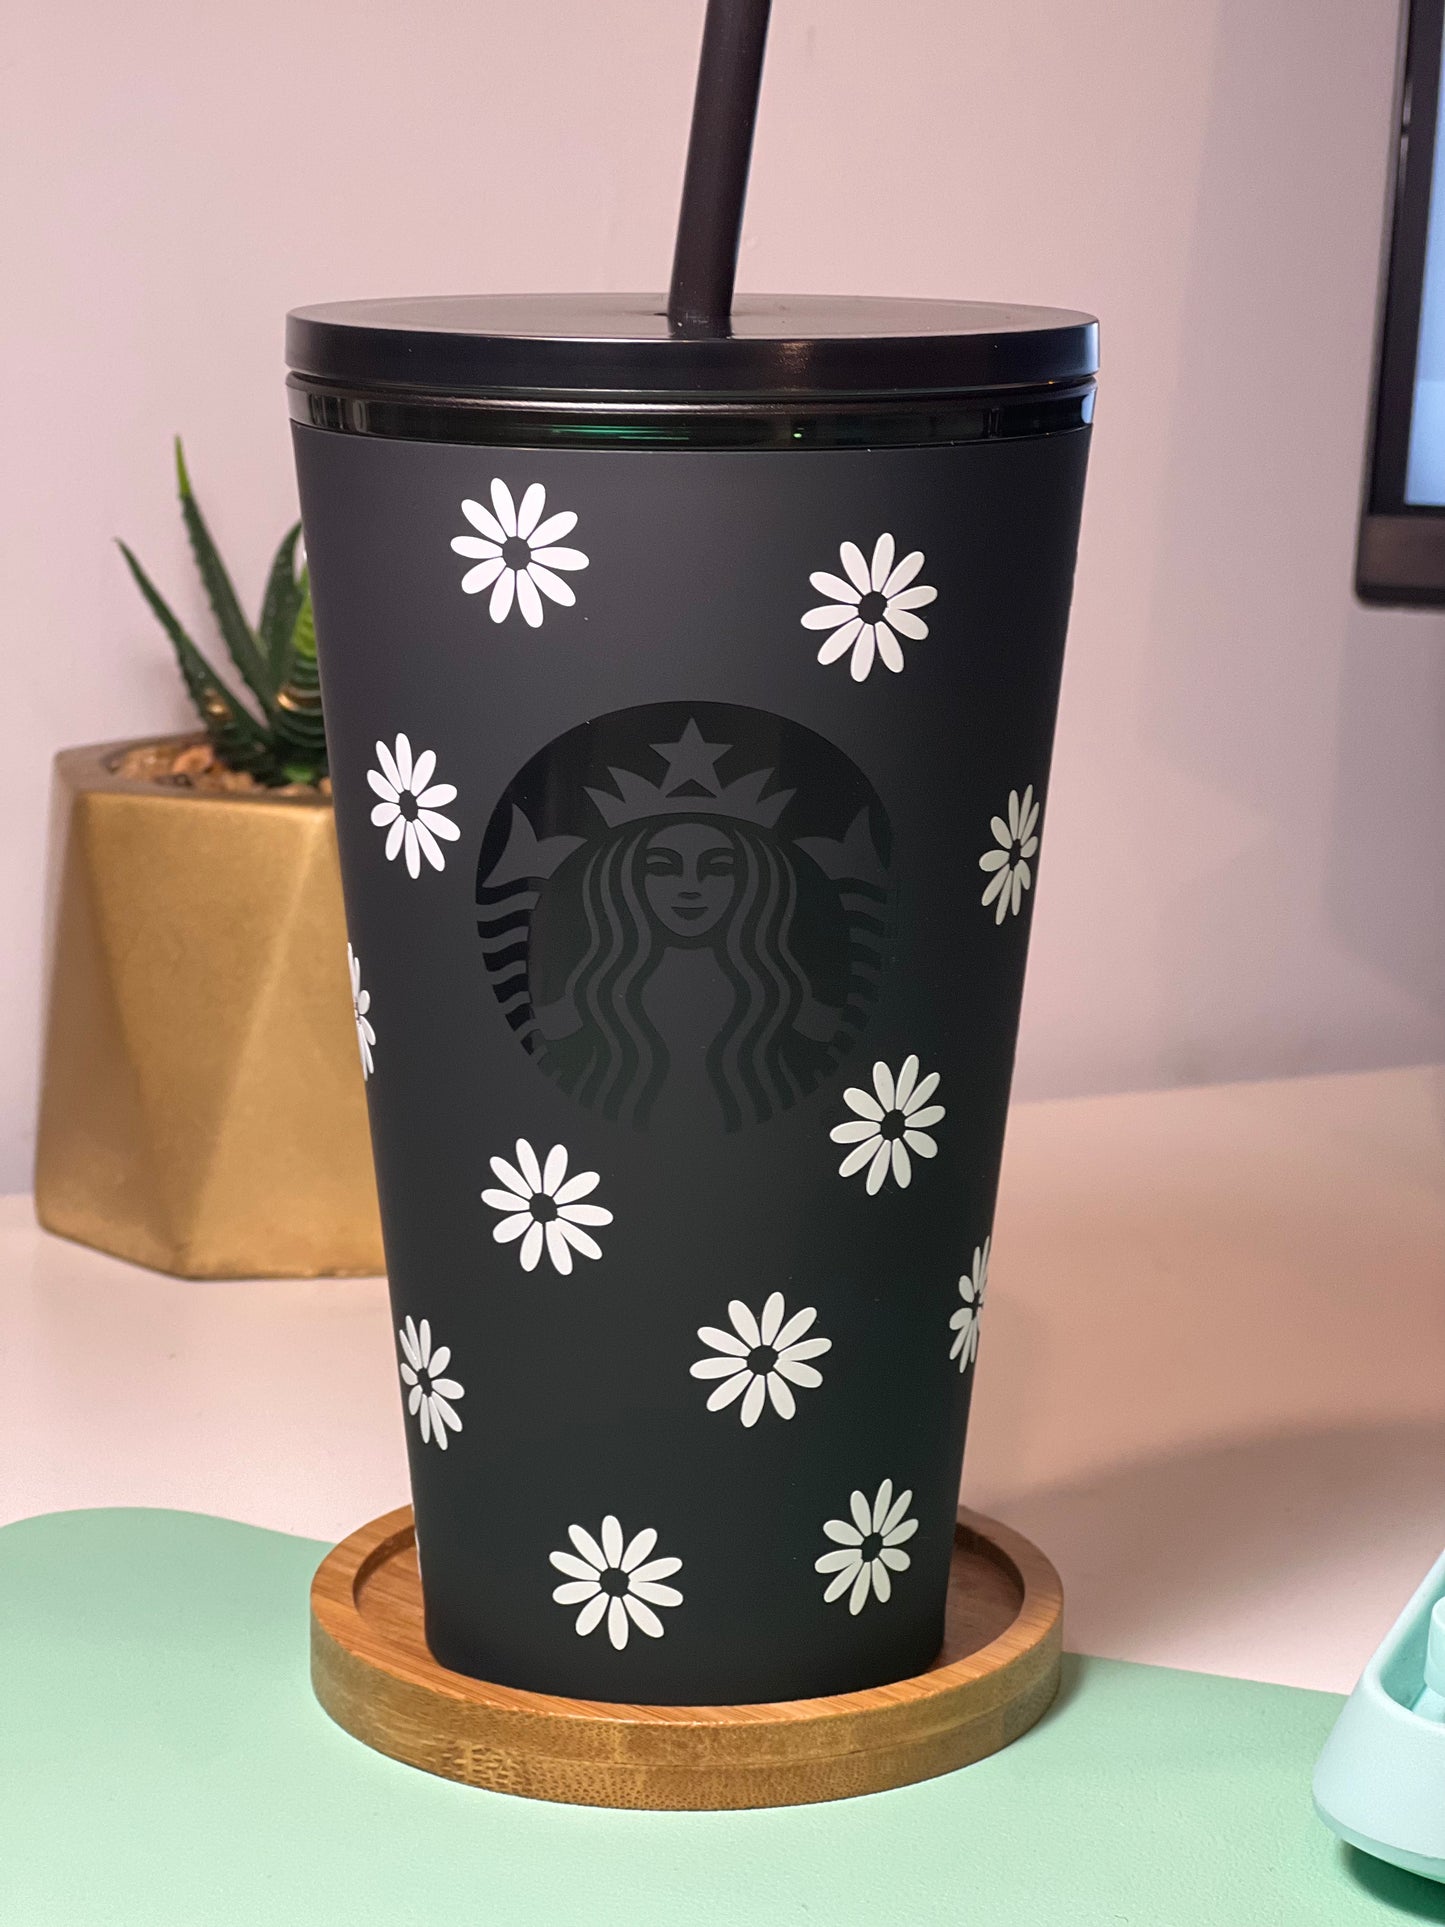 Personalized Starbucks Tumbler Flower Design